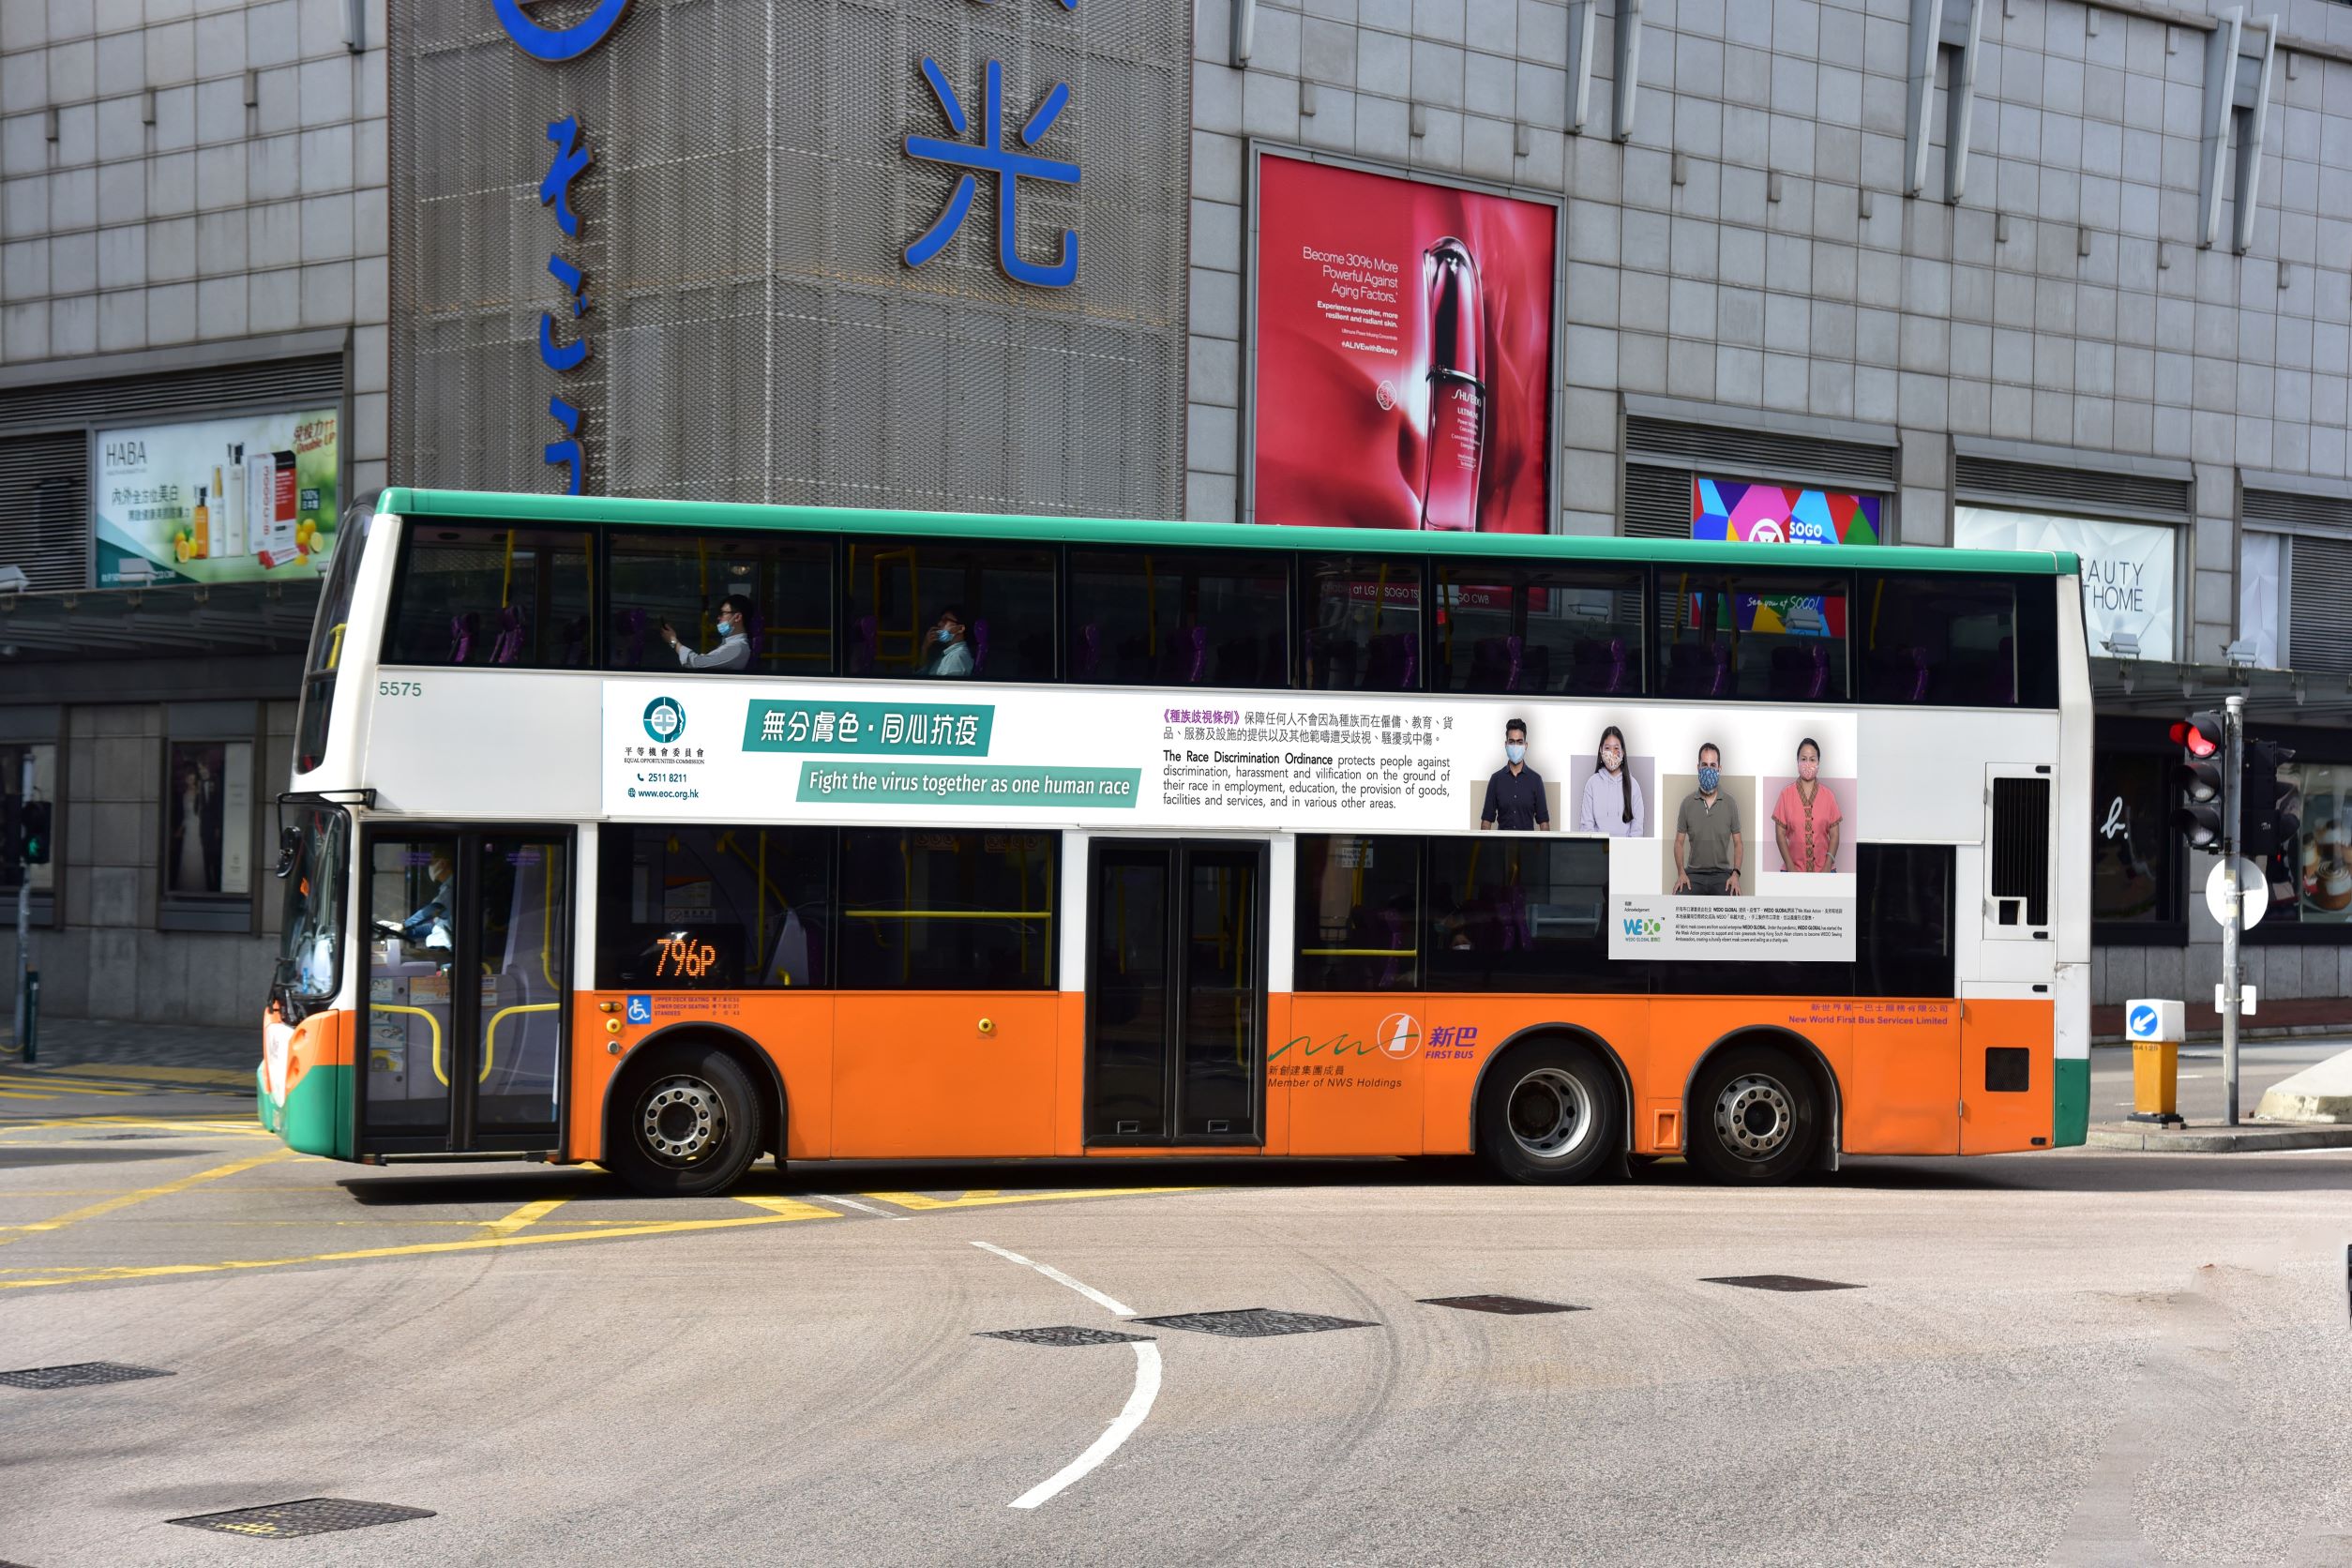 平机会推出巴士车身广告推广种族共融